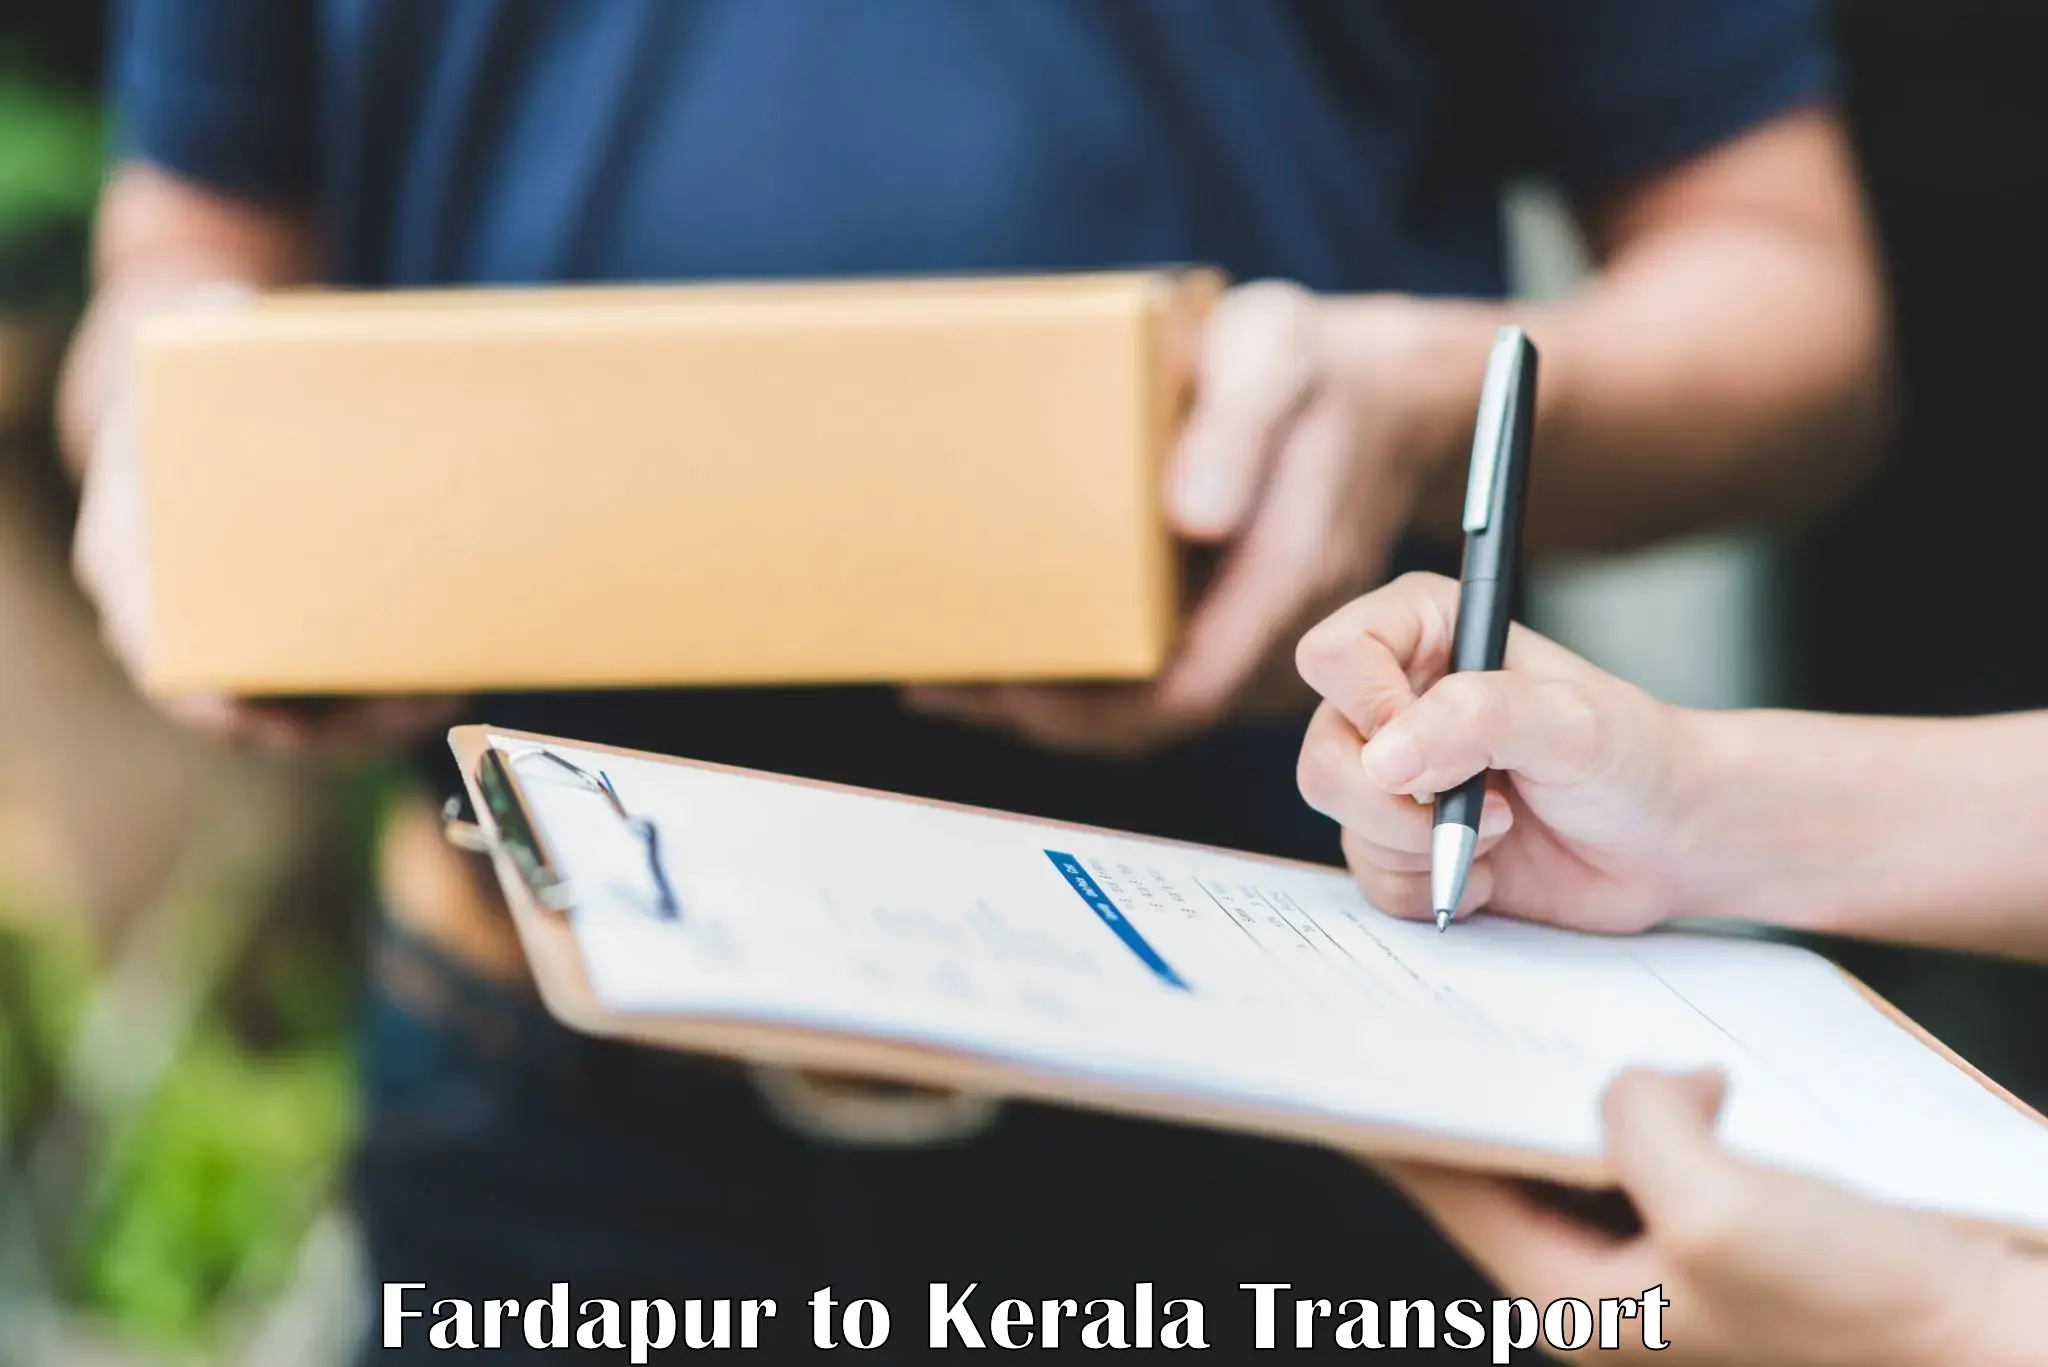 Nearest transport service Fardapur to IIT Palakkad